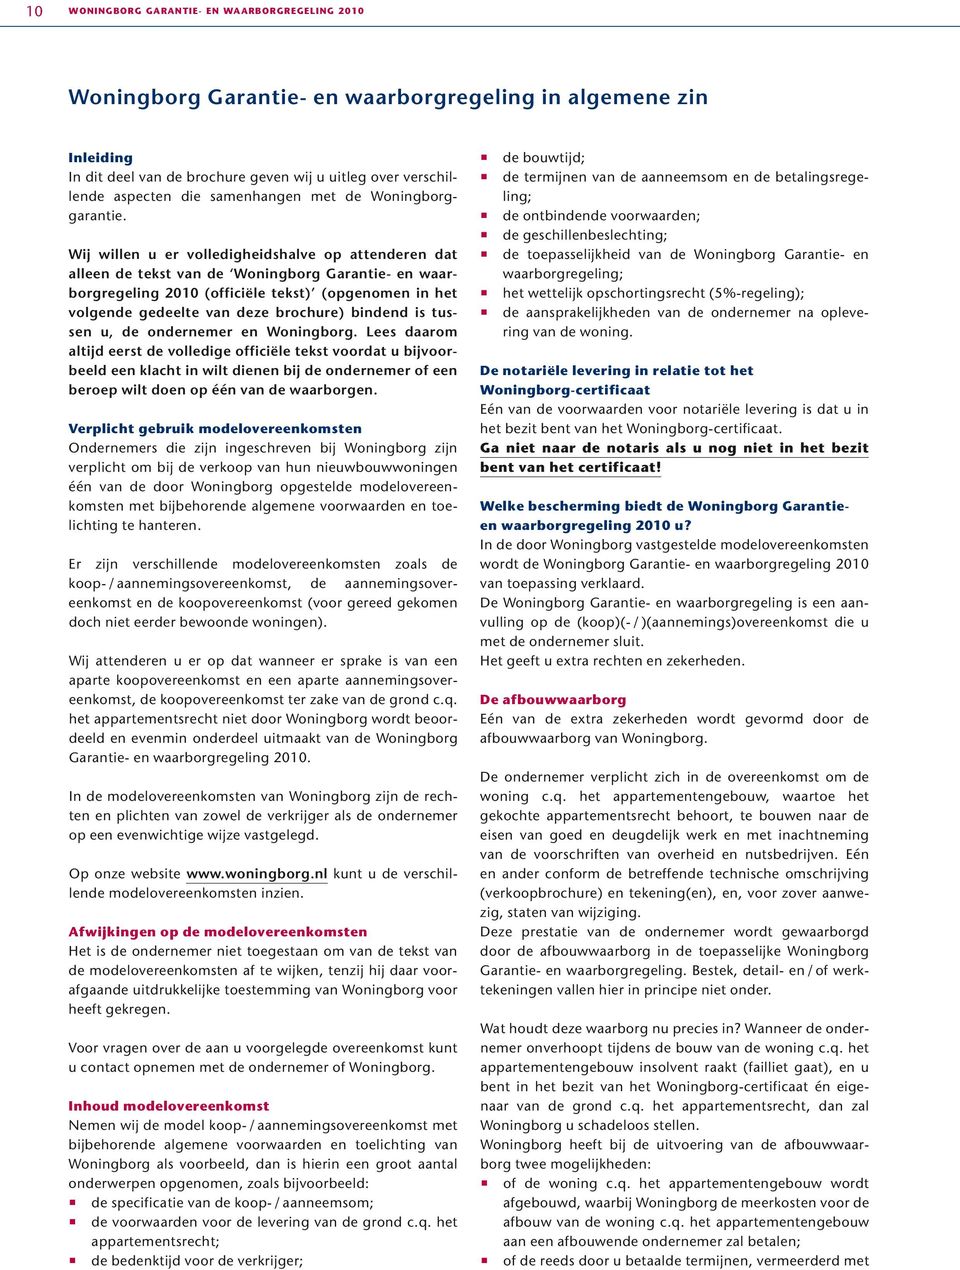 Wij willen u er volledigheidshalve op attenderen dat alleen de tekst van de Woningborg Garantie- en waarborgregeling 2010 (officiële tekst) (opgenomen in het volgende gedeelte van deze brochure)